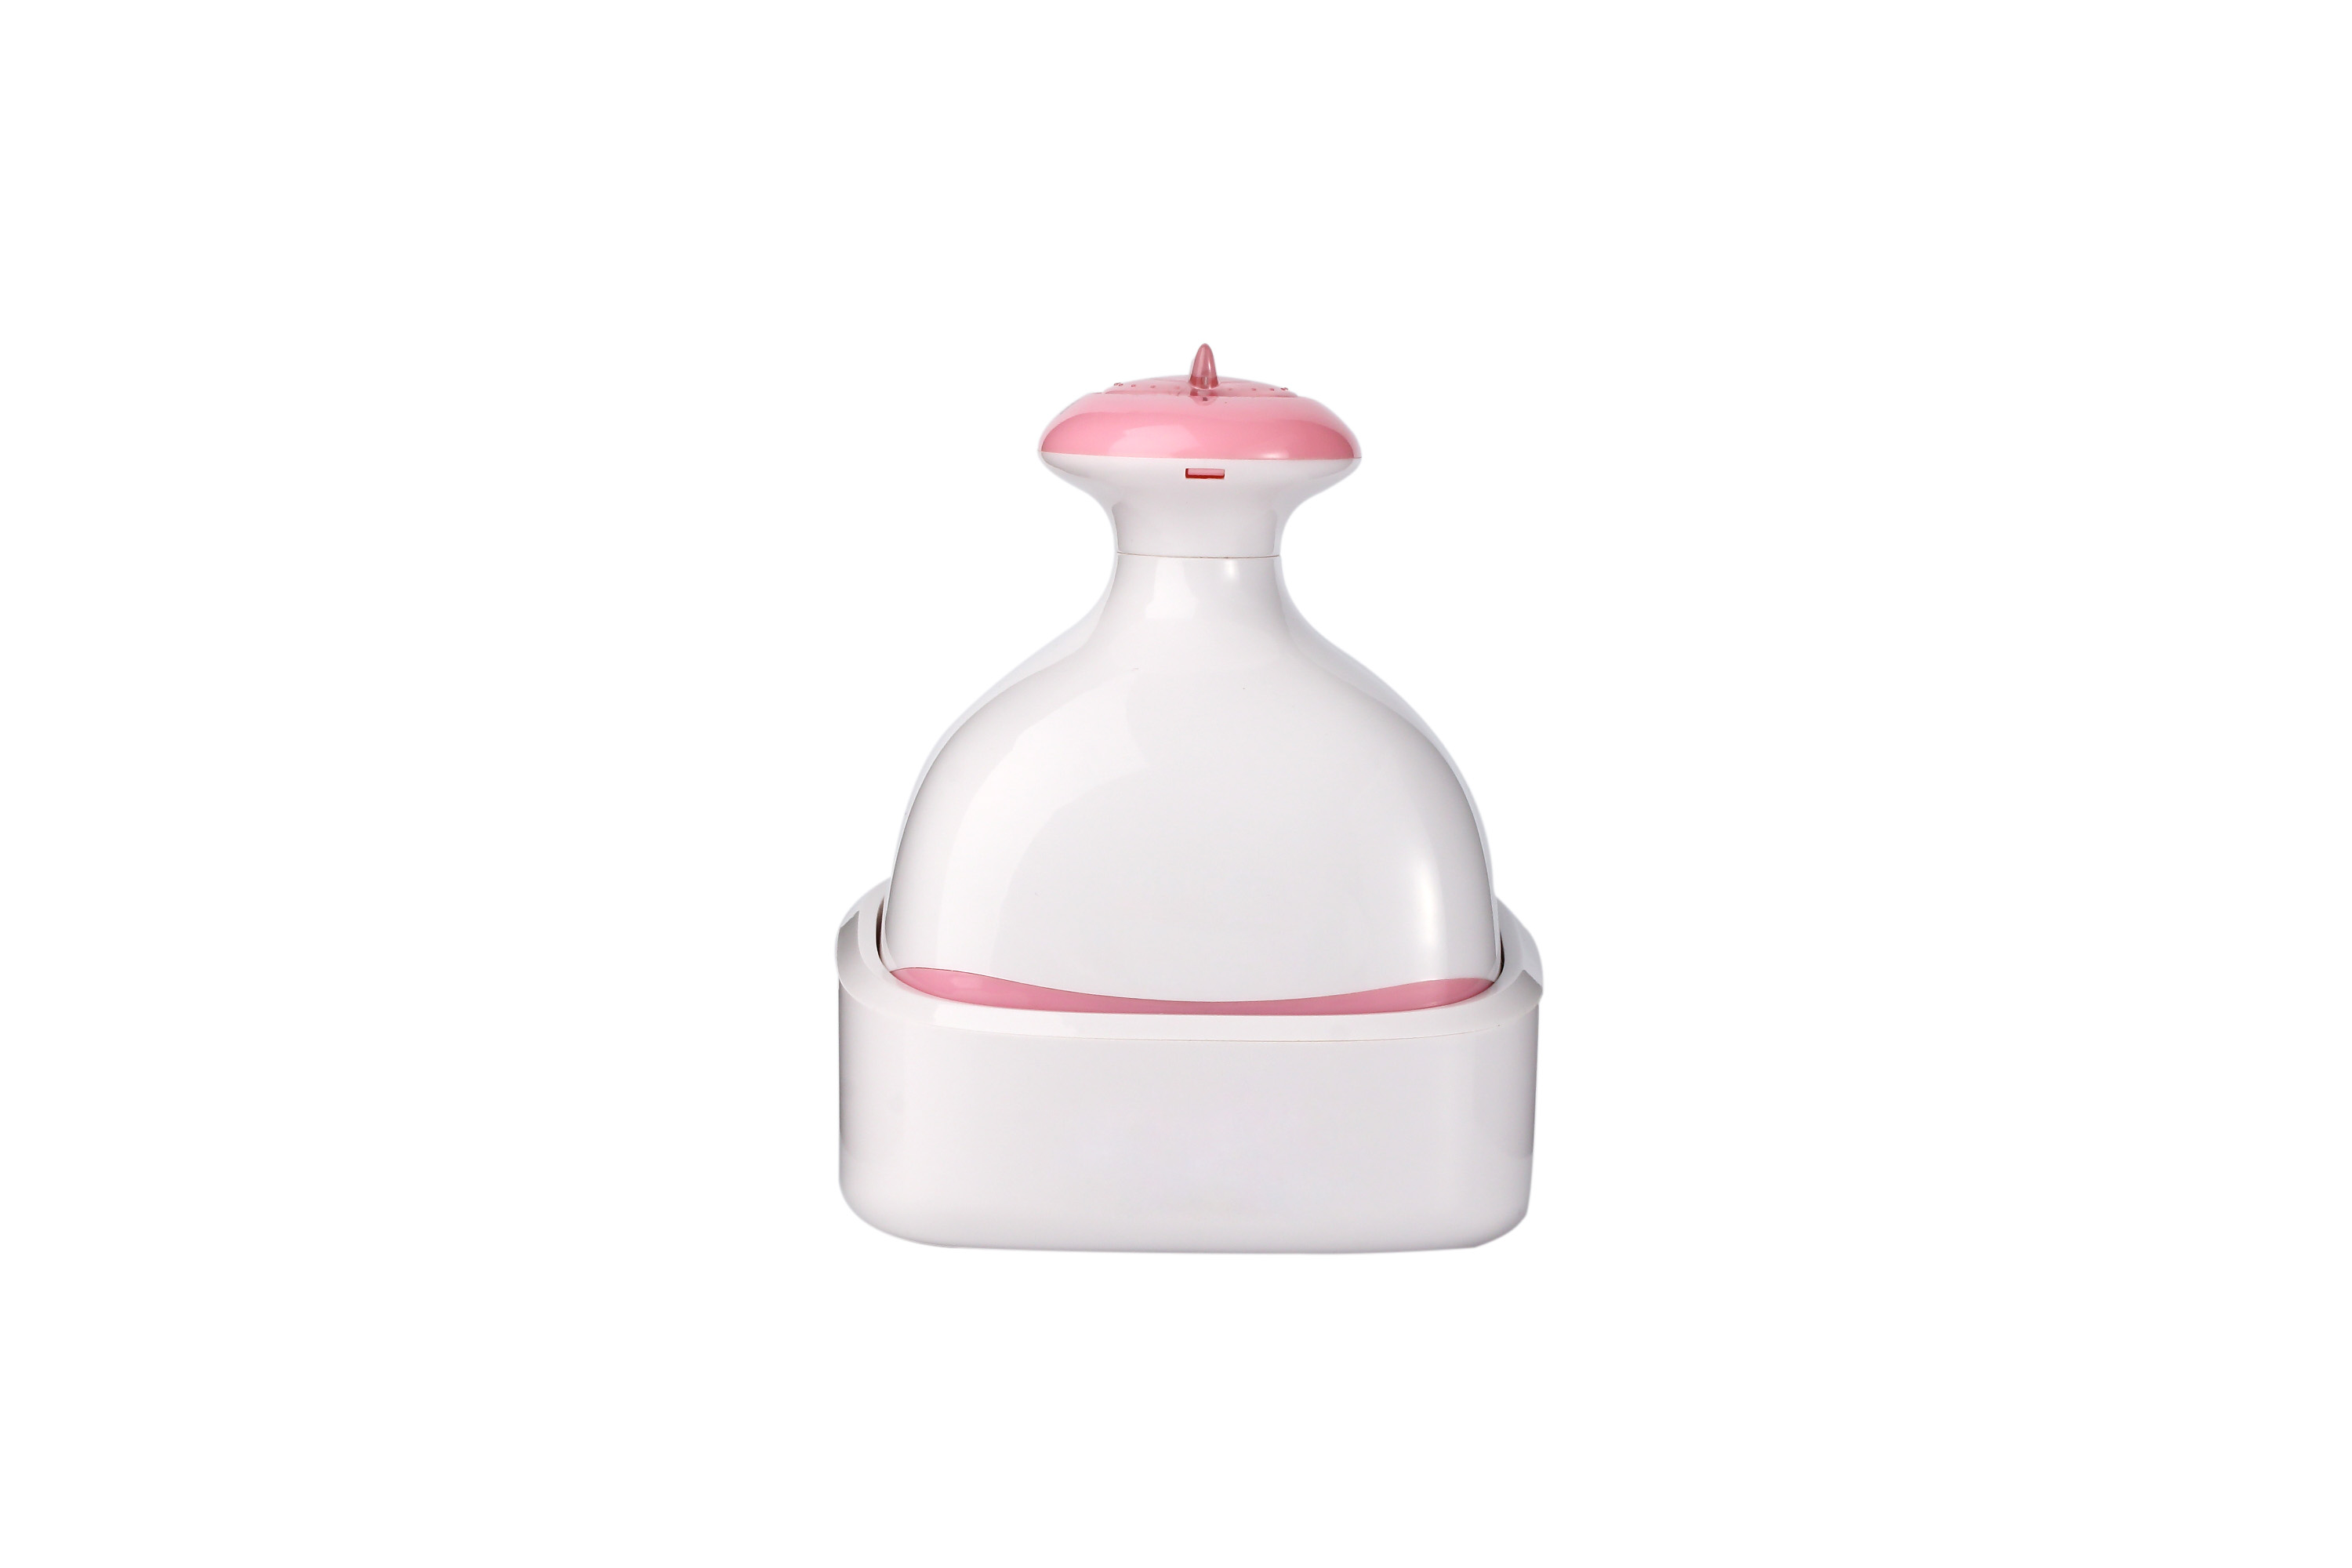 Leotec Masajeador Body&head color rosa vibratorio regulable resistente al agua ipx7 con base recargable prasco fd9043014 molduras decorativas para coches hand massager